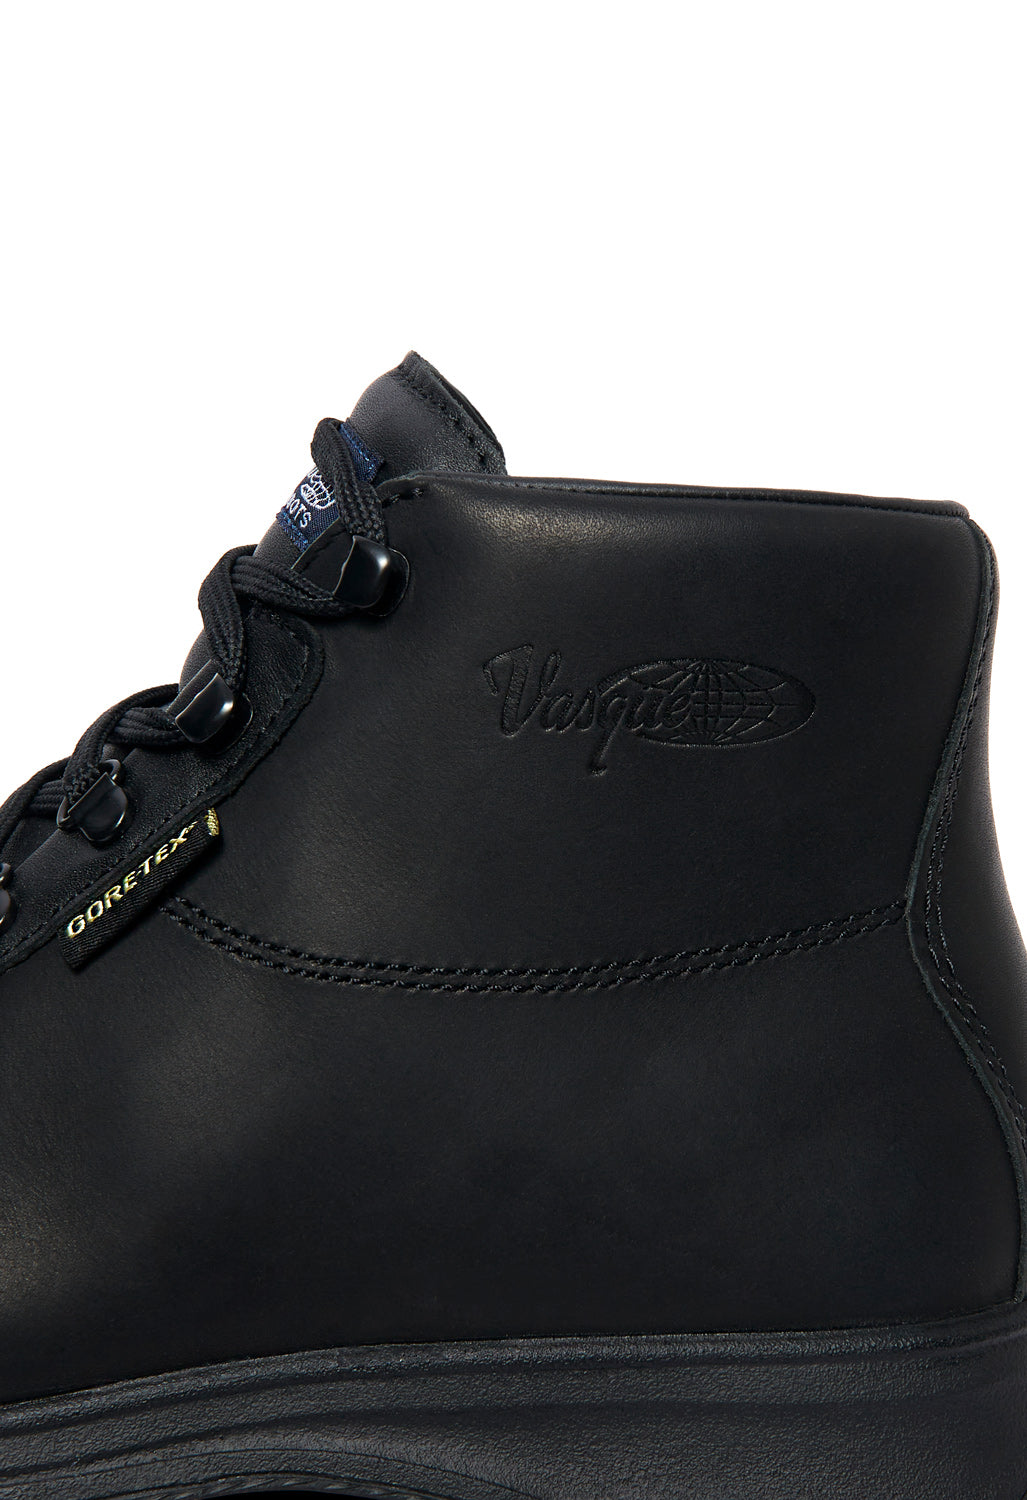 Vasque Sundowner GORE-TEX Boots - Black